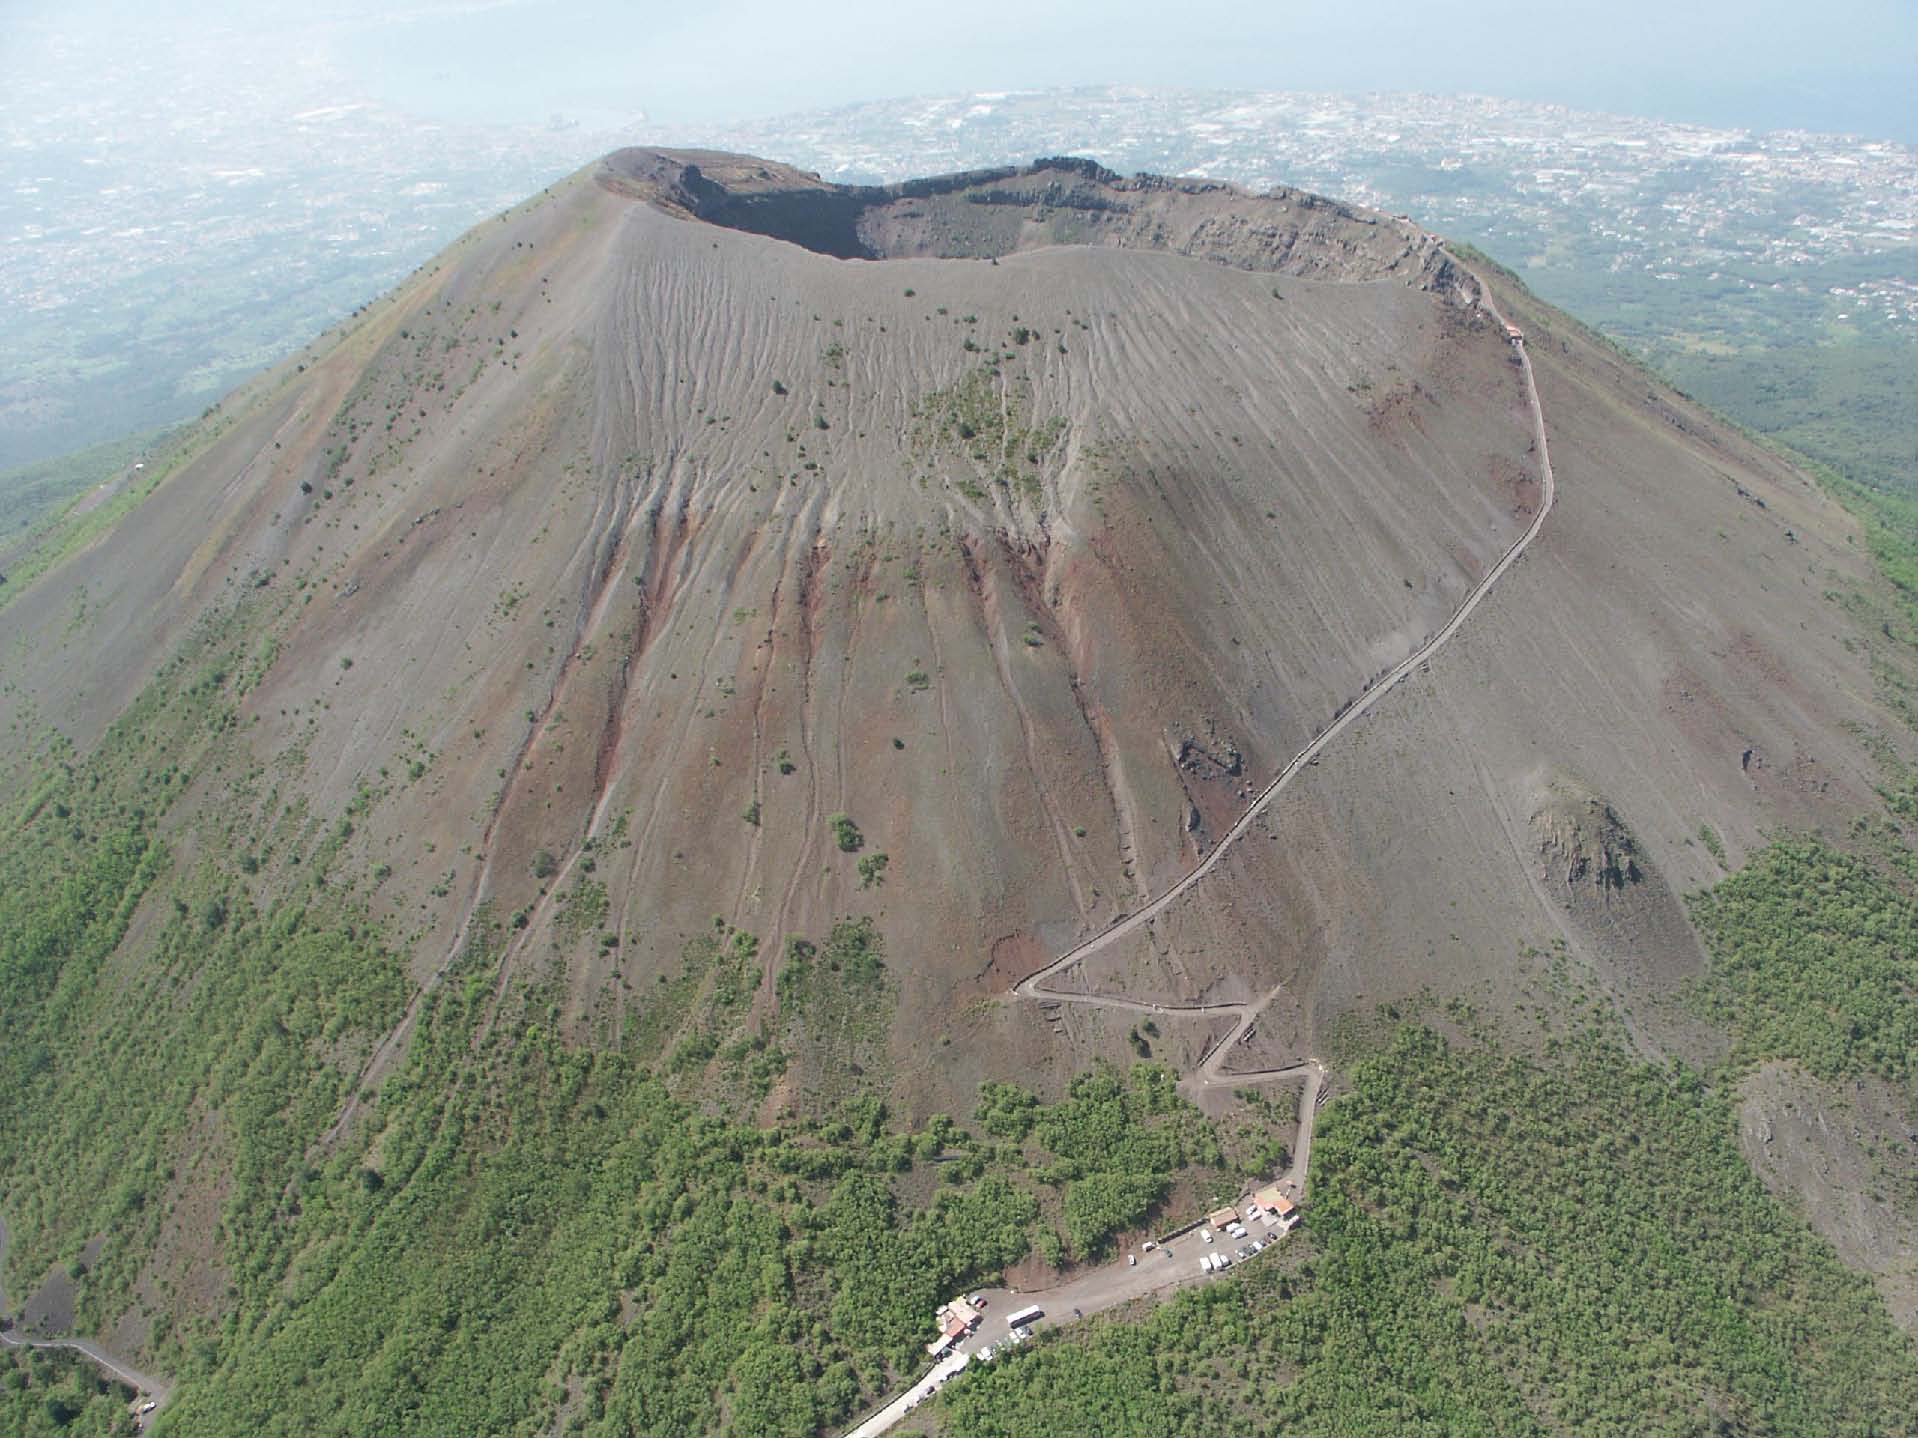  A Napoli, scienziati di tutto il mondo si riuniscono per discutere sulle tecniche più innovative di monitoraggio dei vulcan